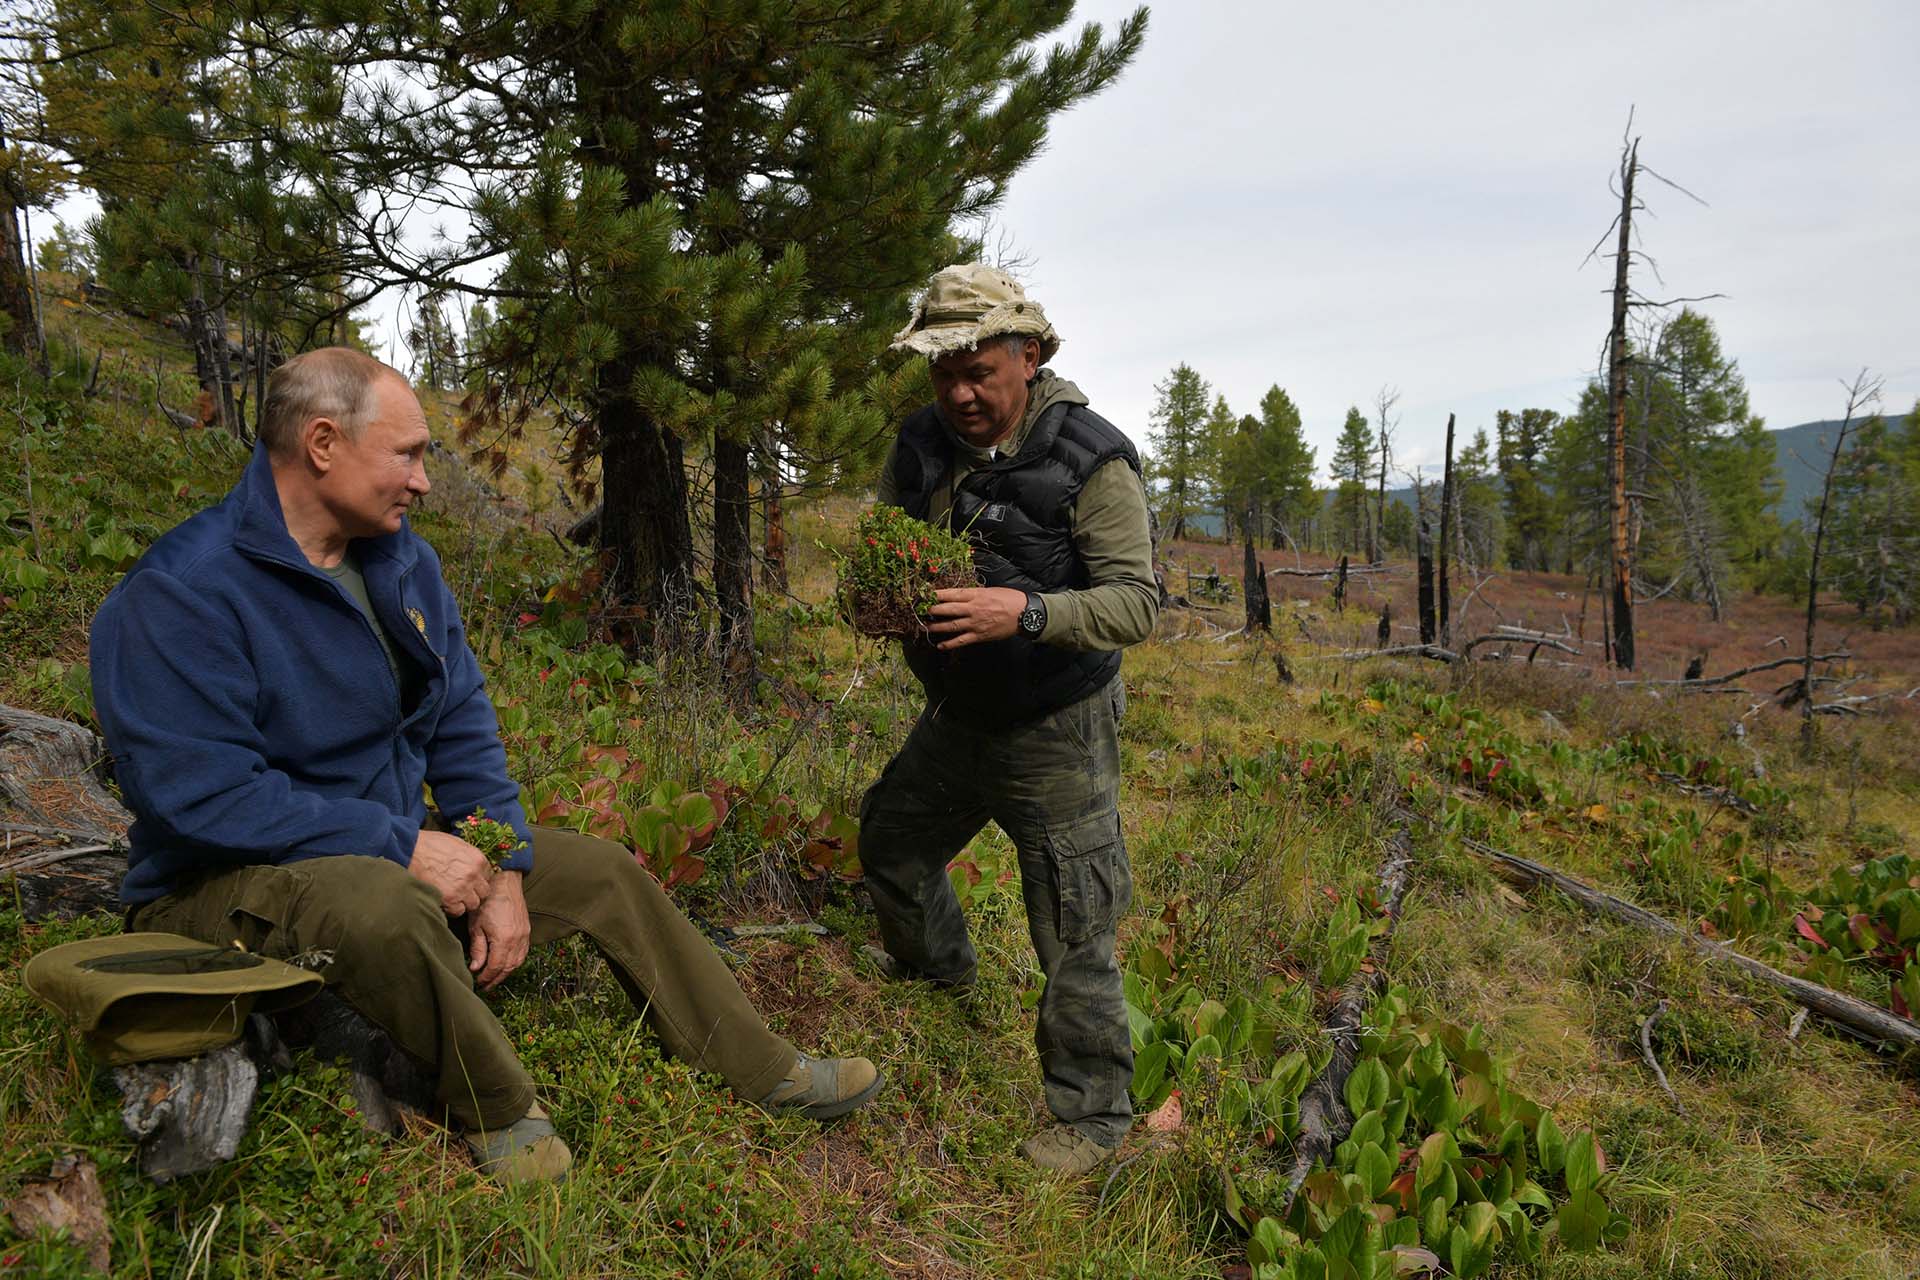 Shoigu ha recibido a Putin en su casa en las montañas de Siberia. El año pasado, el Kremlin publicó una serie de fotos que mostraban a Putin y Shoigu pasando el rato juntos en el bosque 